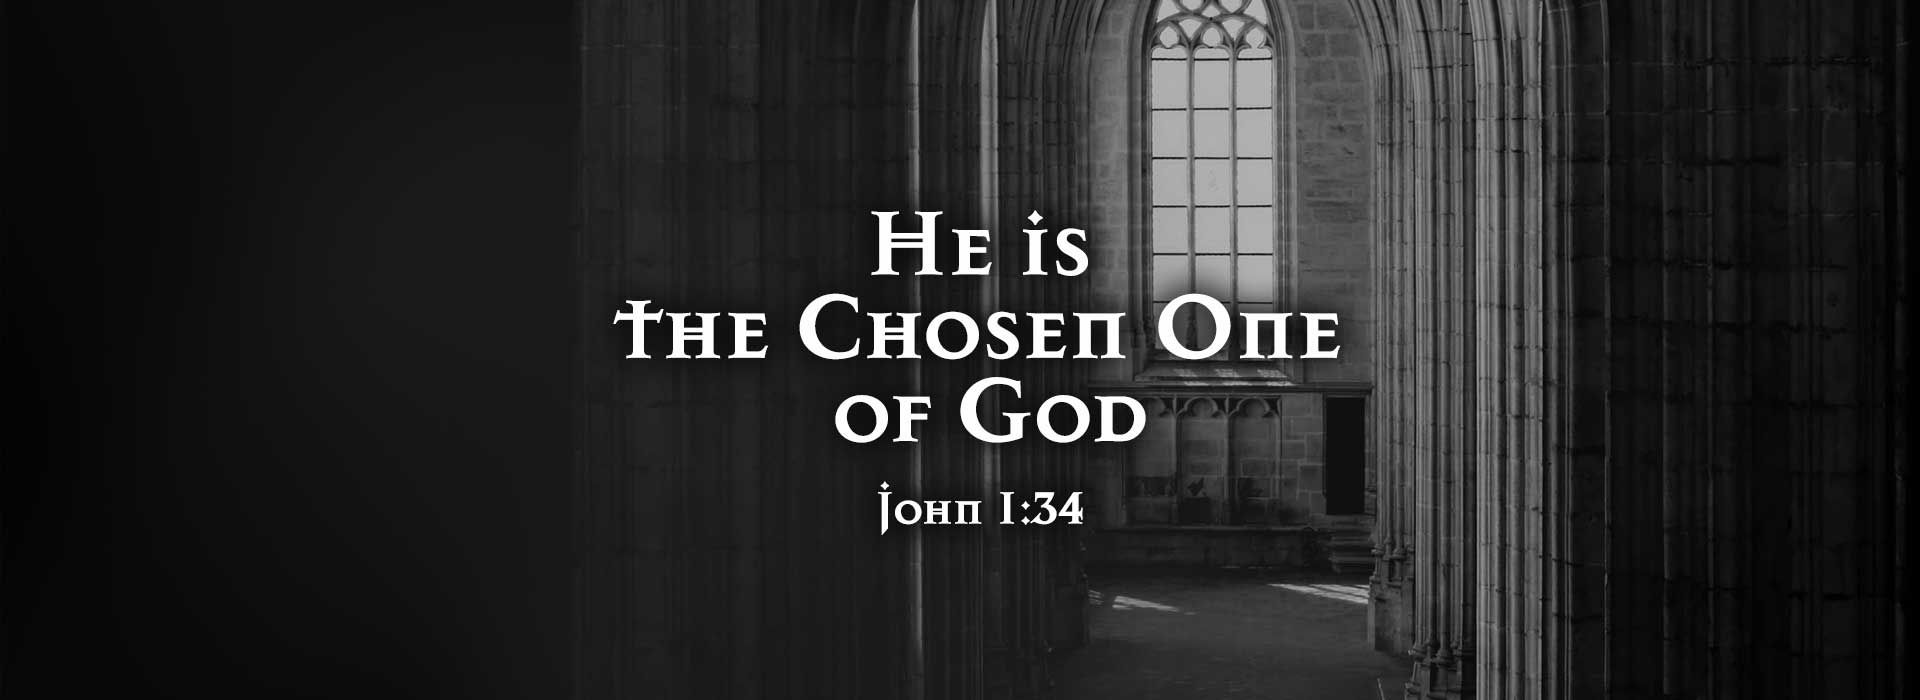 John 1:34